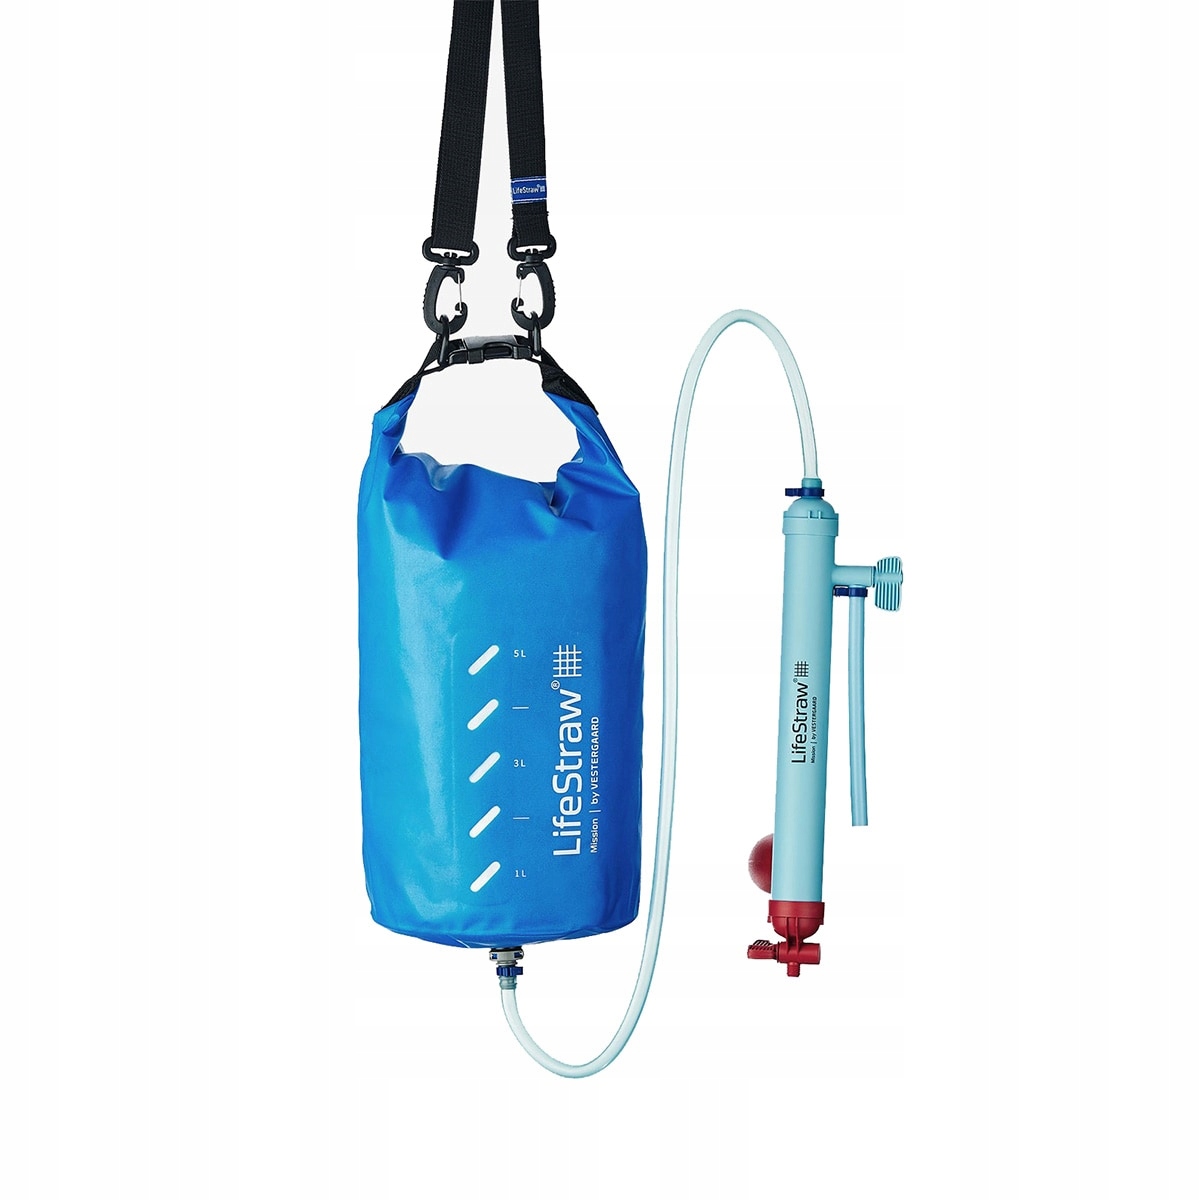 Vodní filtr LifeStraw Mission 12 l modrá bublina filtruje 99,9 %bakteri